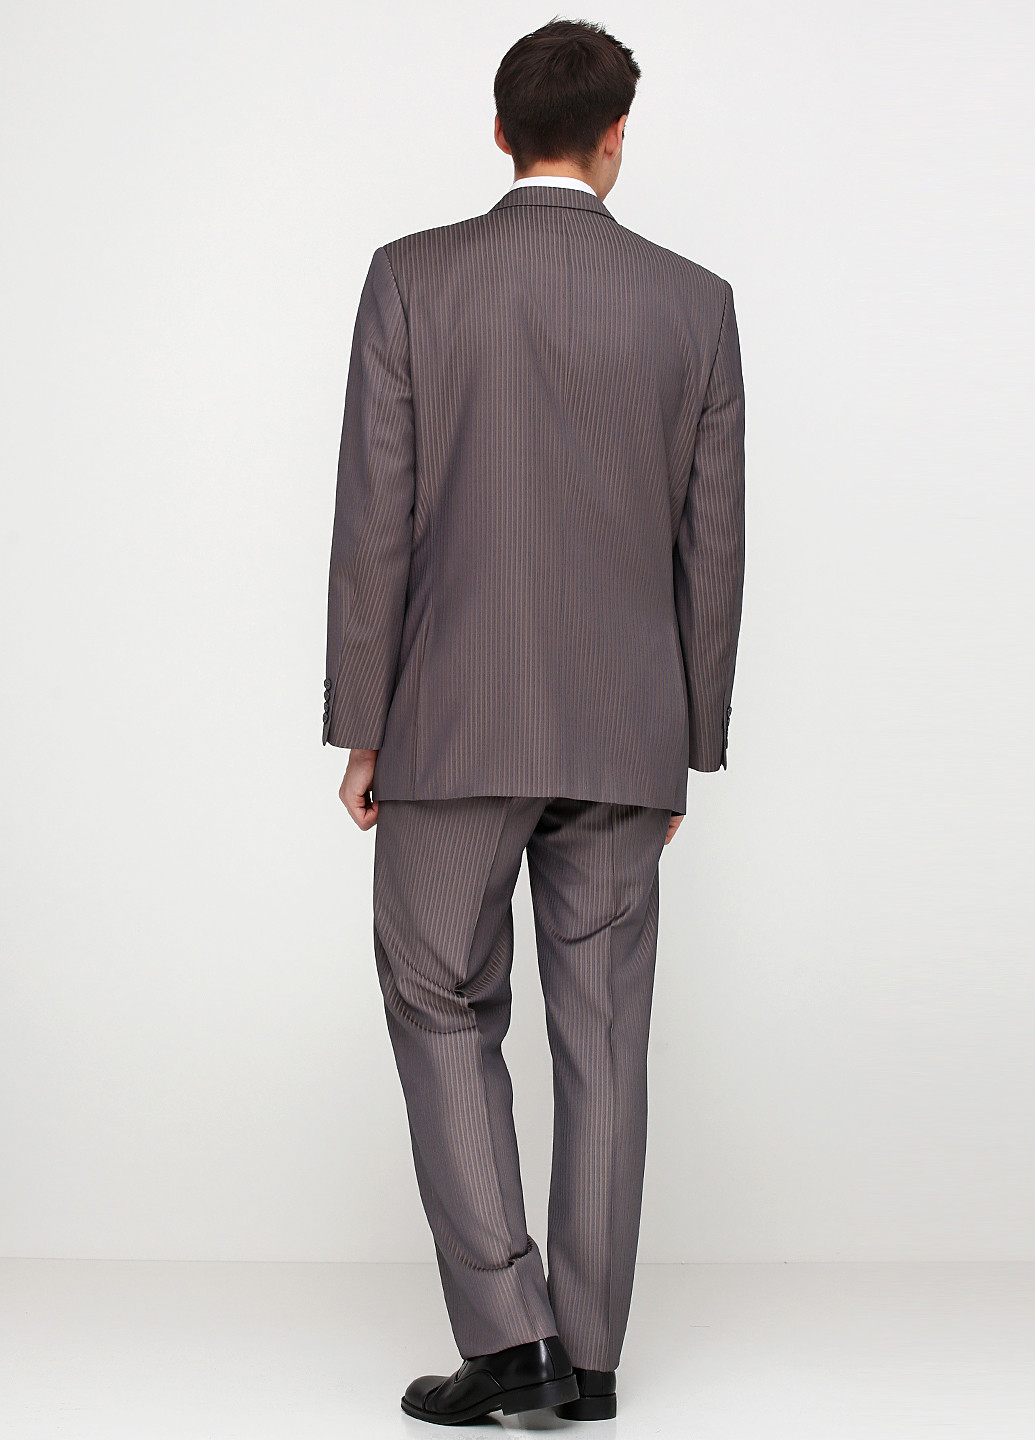 Сіро-коричневий демісезонний костюм (пиджак, брюки) брючний Maestro Bravo